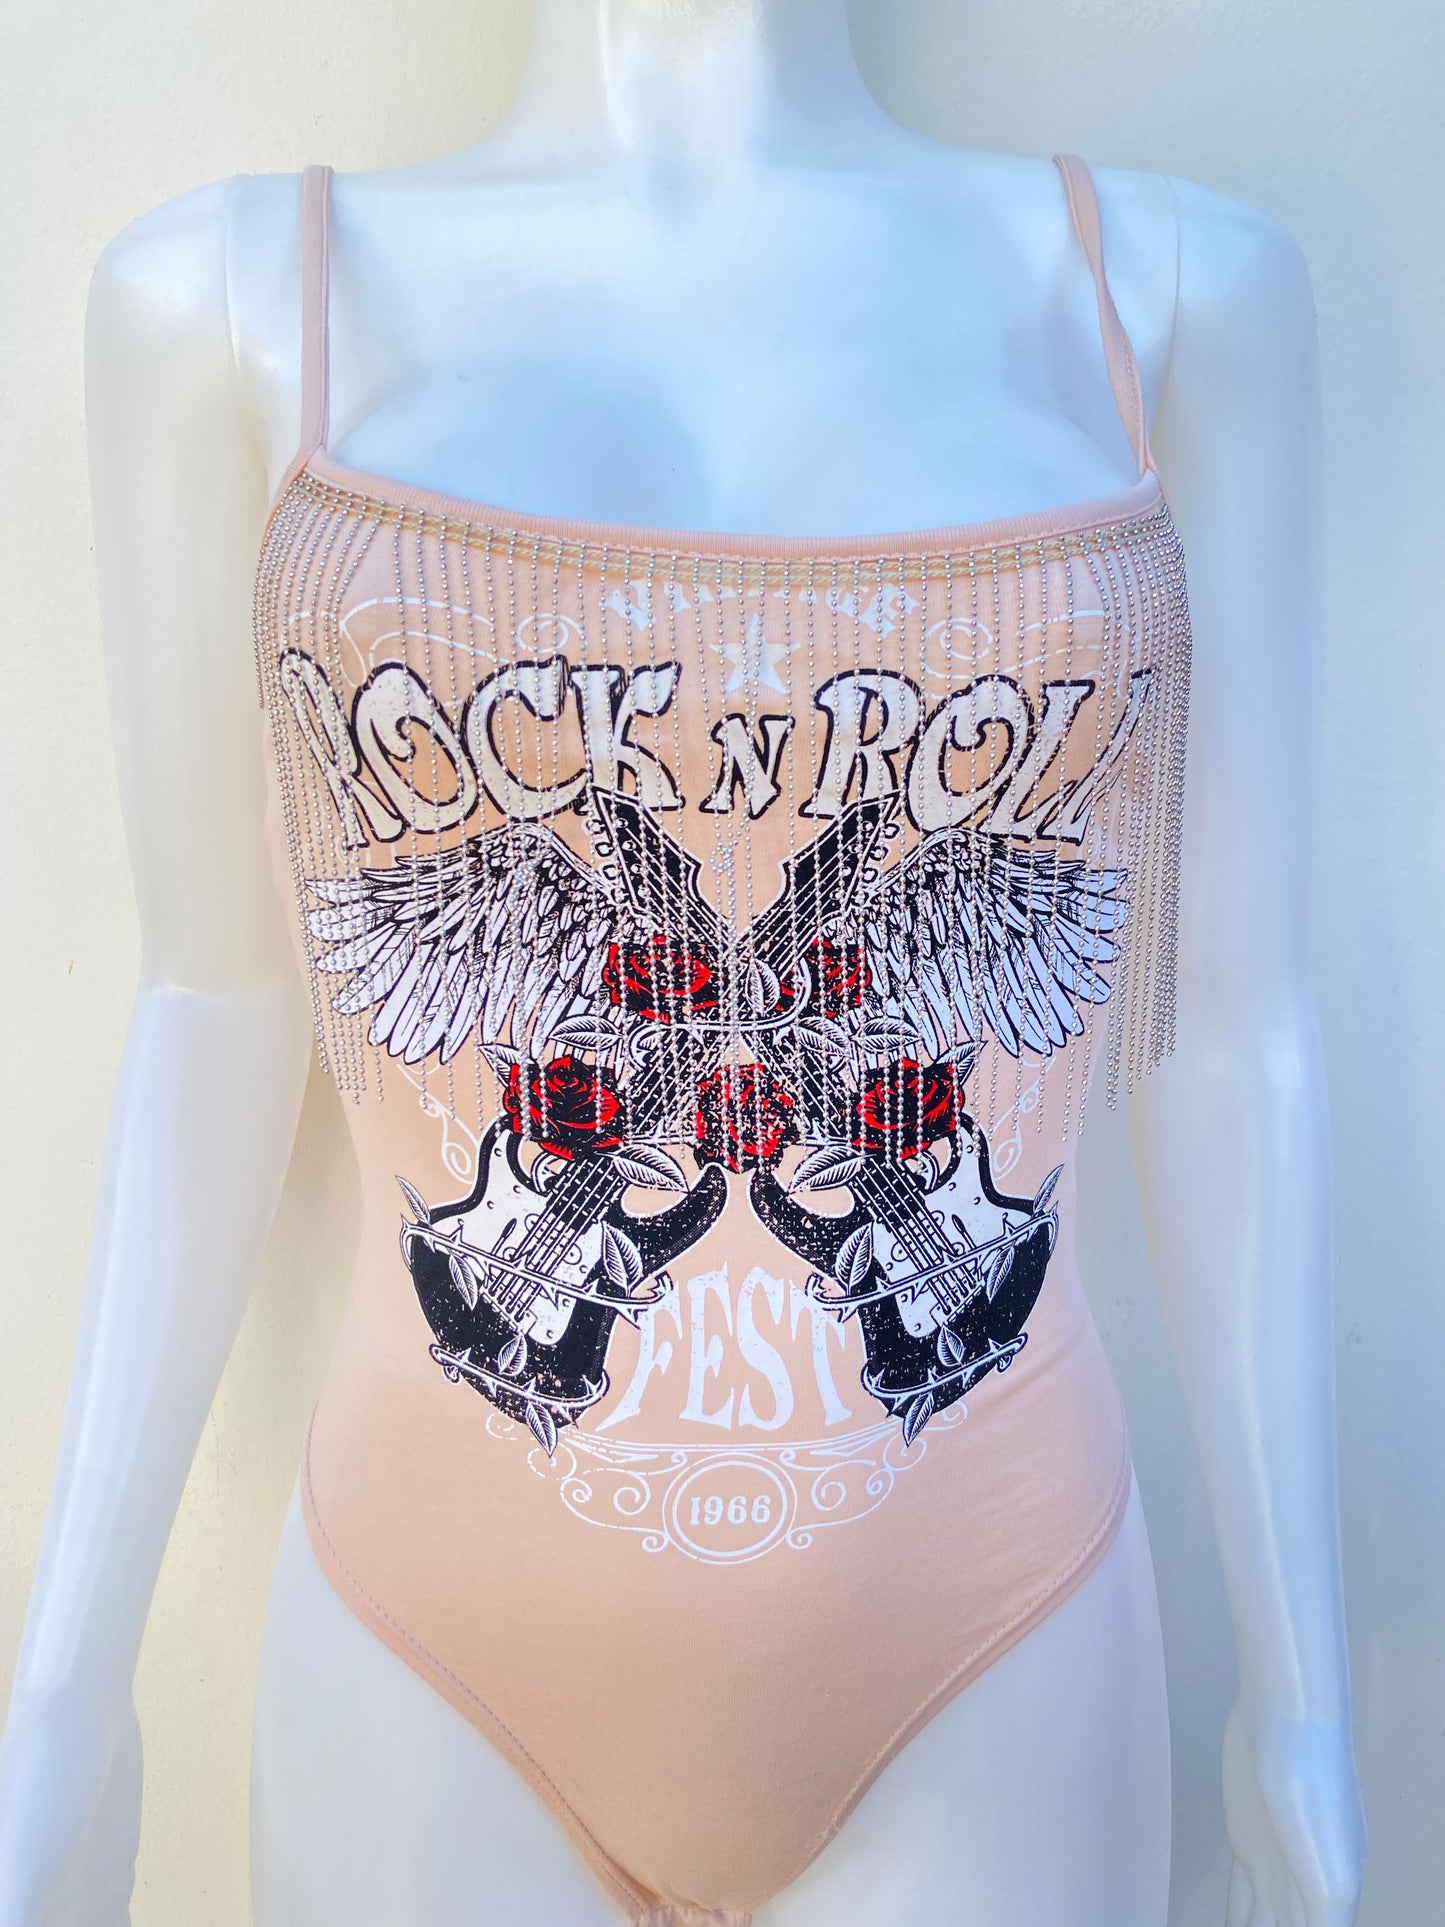 Body Fashion Nova original crema con estampado de guitarras y rosas, letras ROCKN ROLL.